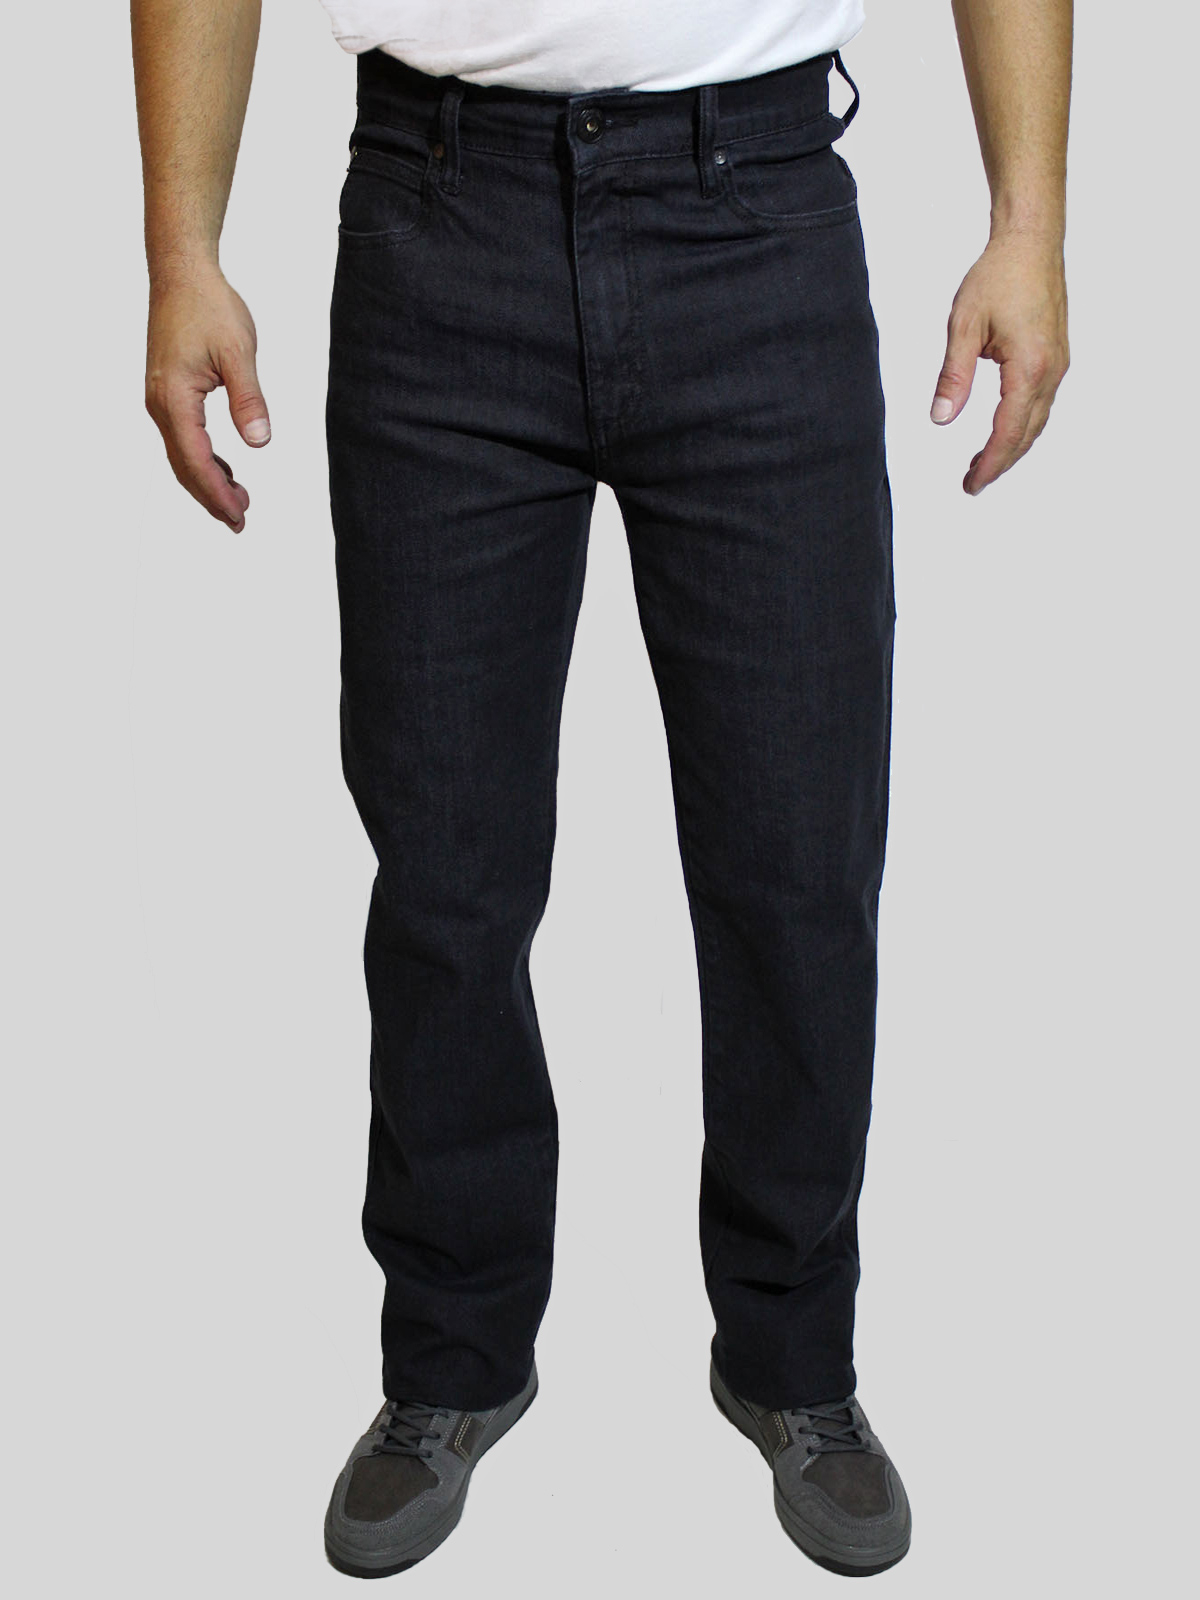 Takhiro pantalones vaqueros de hombre básicos rectos 21120/71 negro lavado